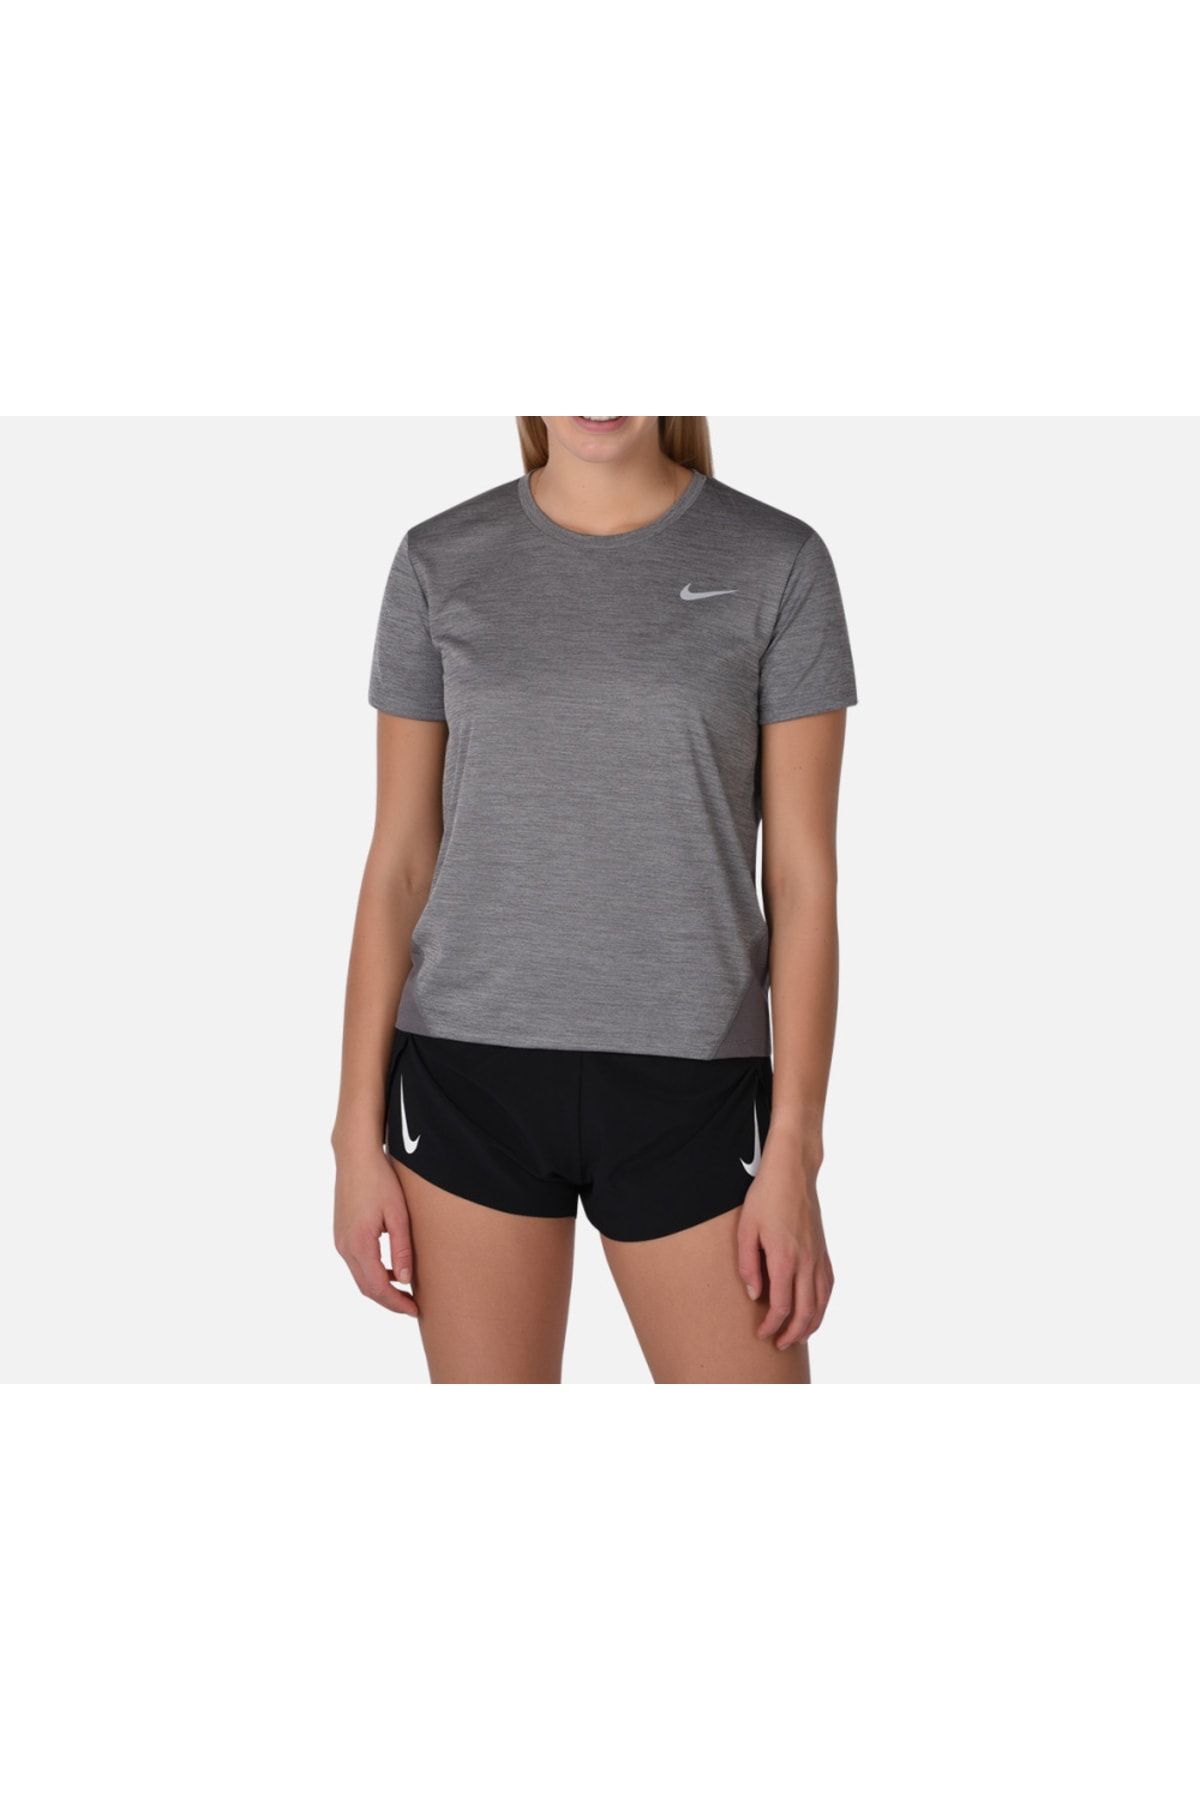 Nike Runnıng Women’s Gri T-shirt